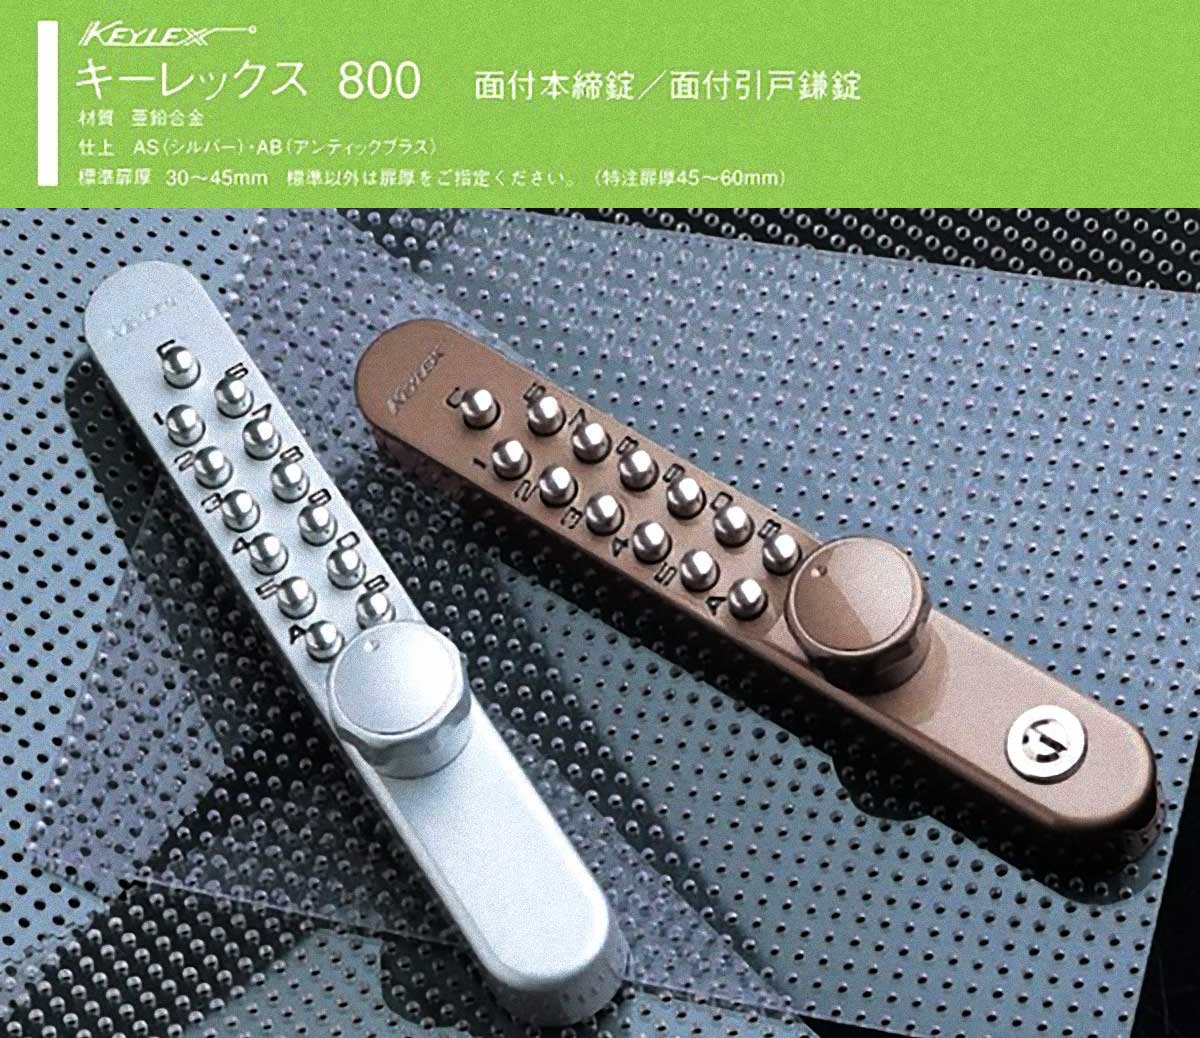 NAGASAWA キーレックス800 面付引戸鎌錠鍵付 ロックターンタイプ シルバー 22805M - 1